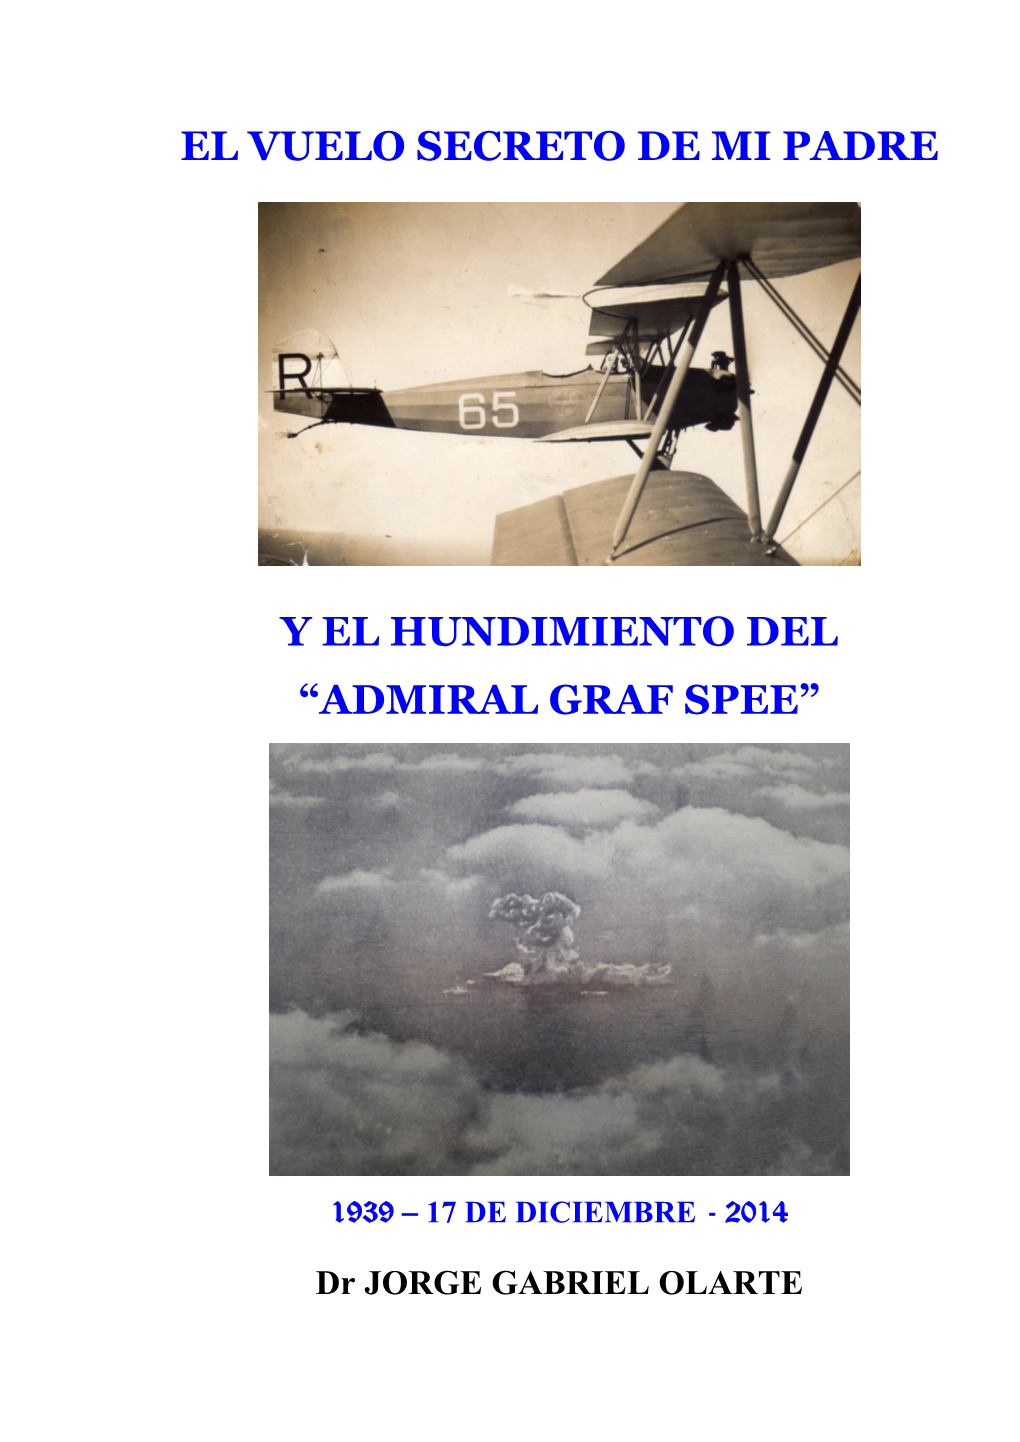 Admiral Graf Spee”